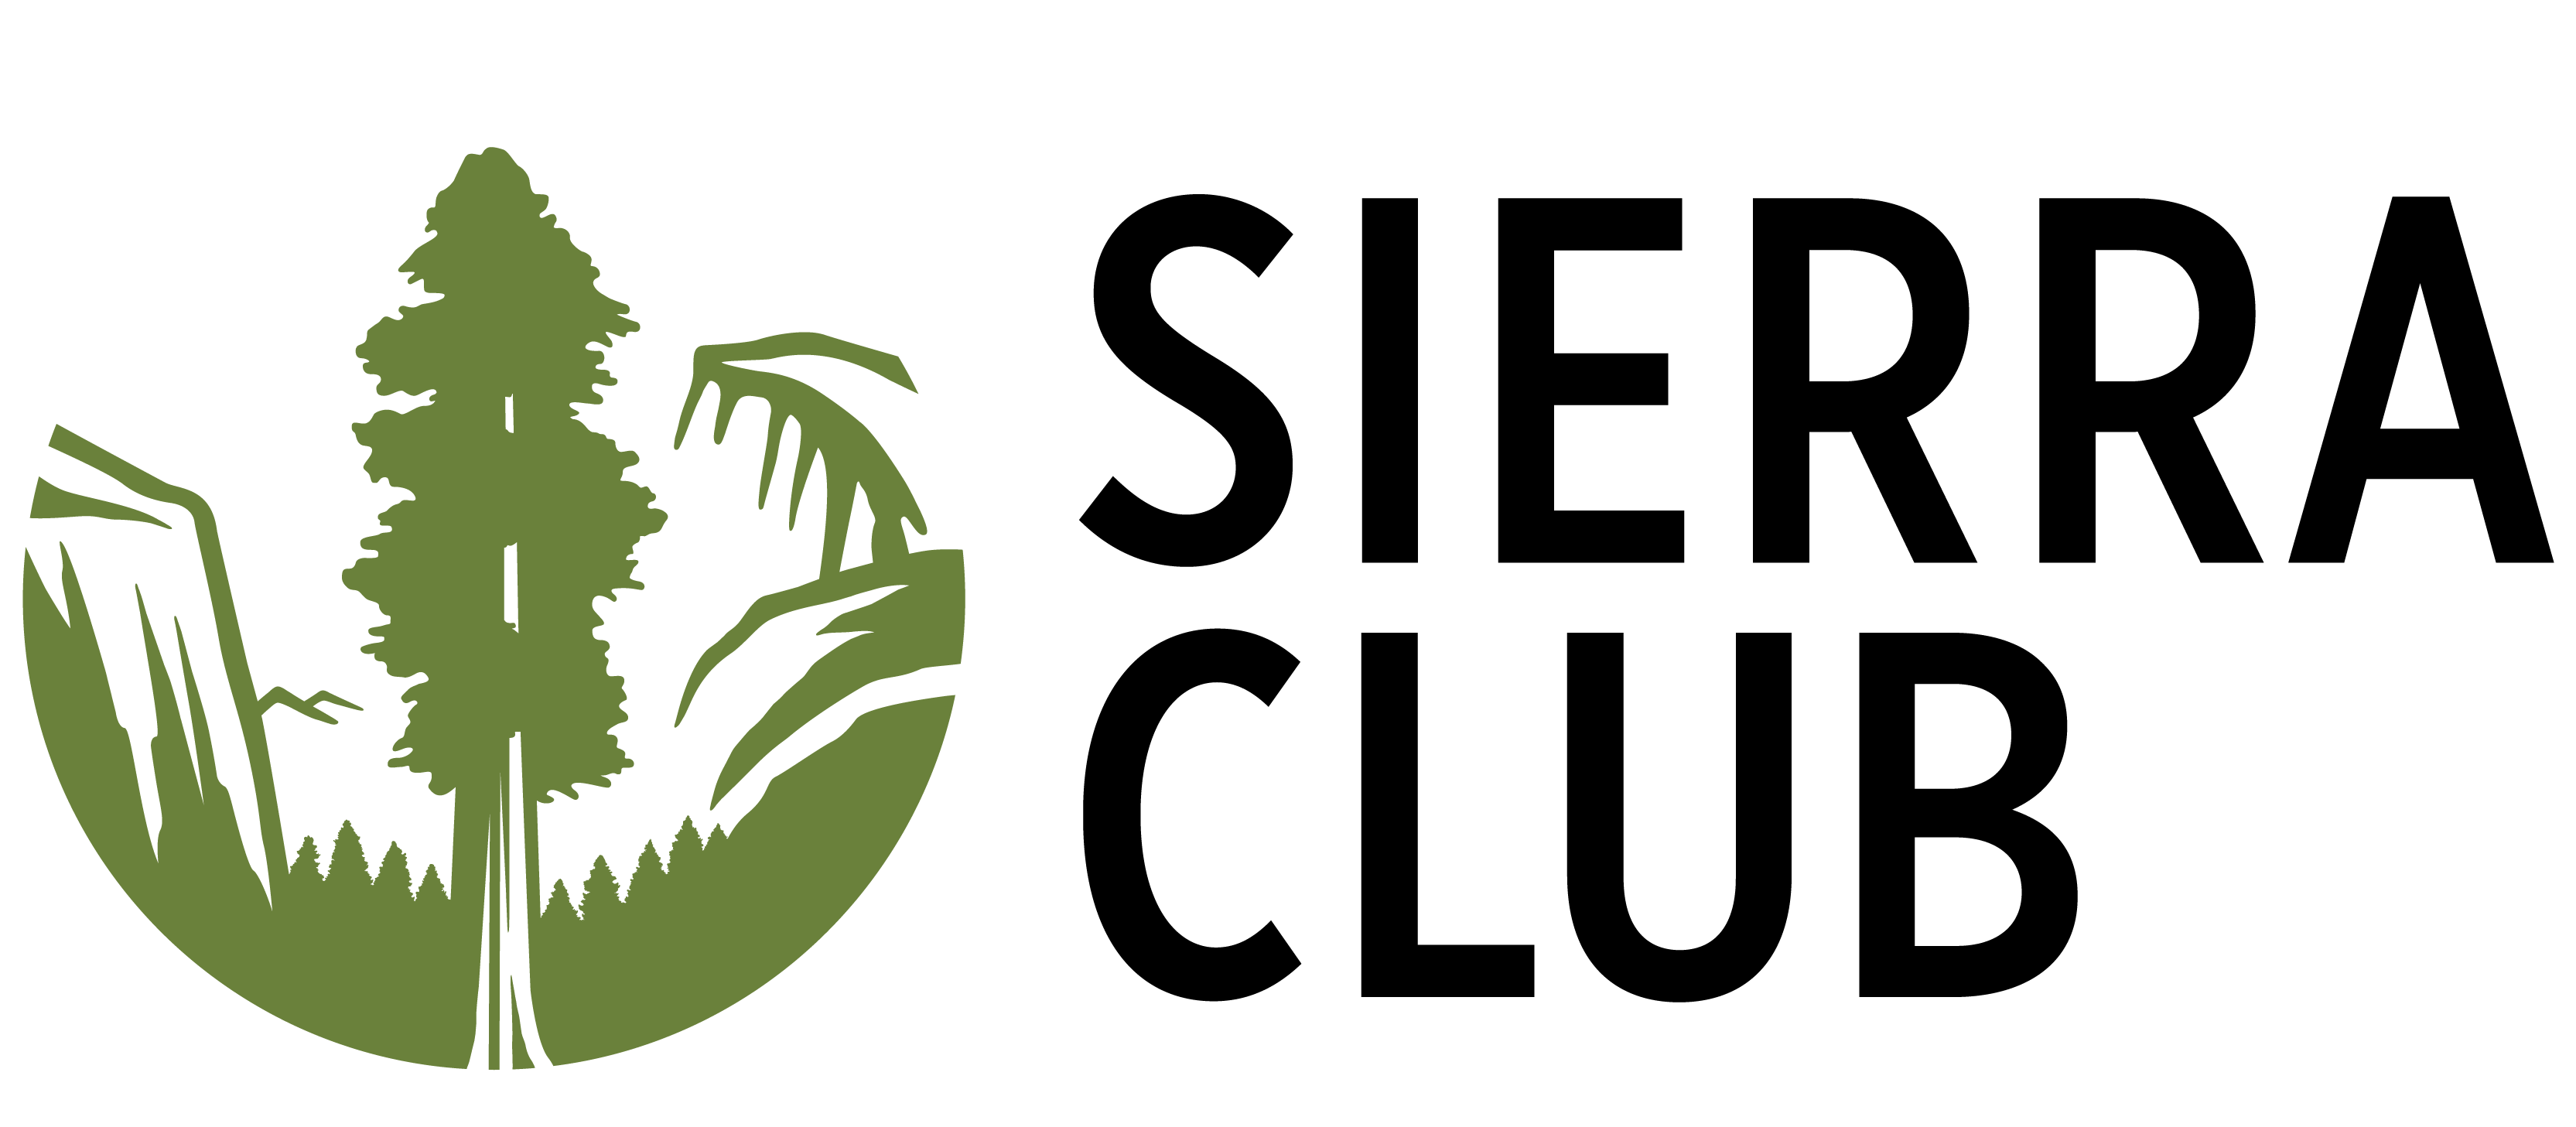 Seirra Logo - Sierra Club Brand Style Guide